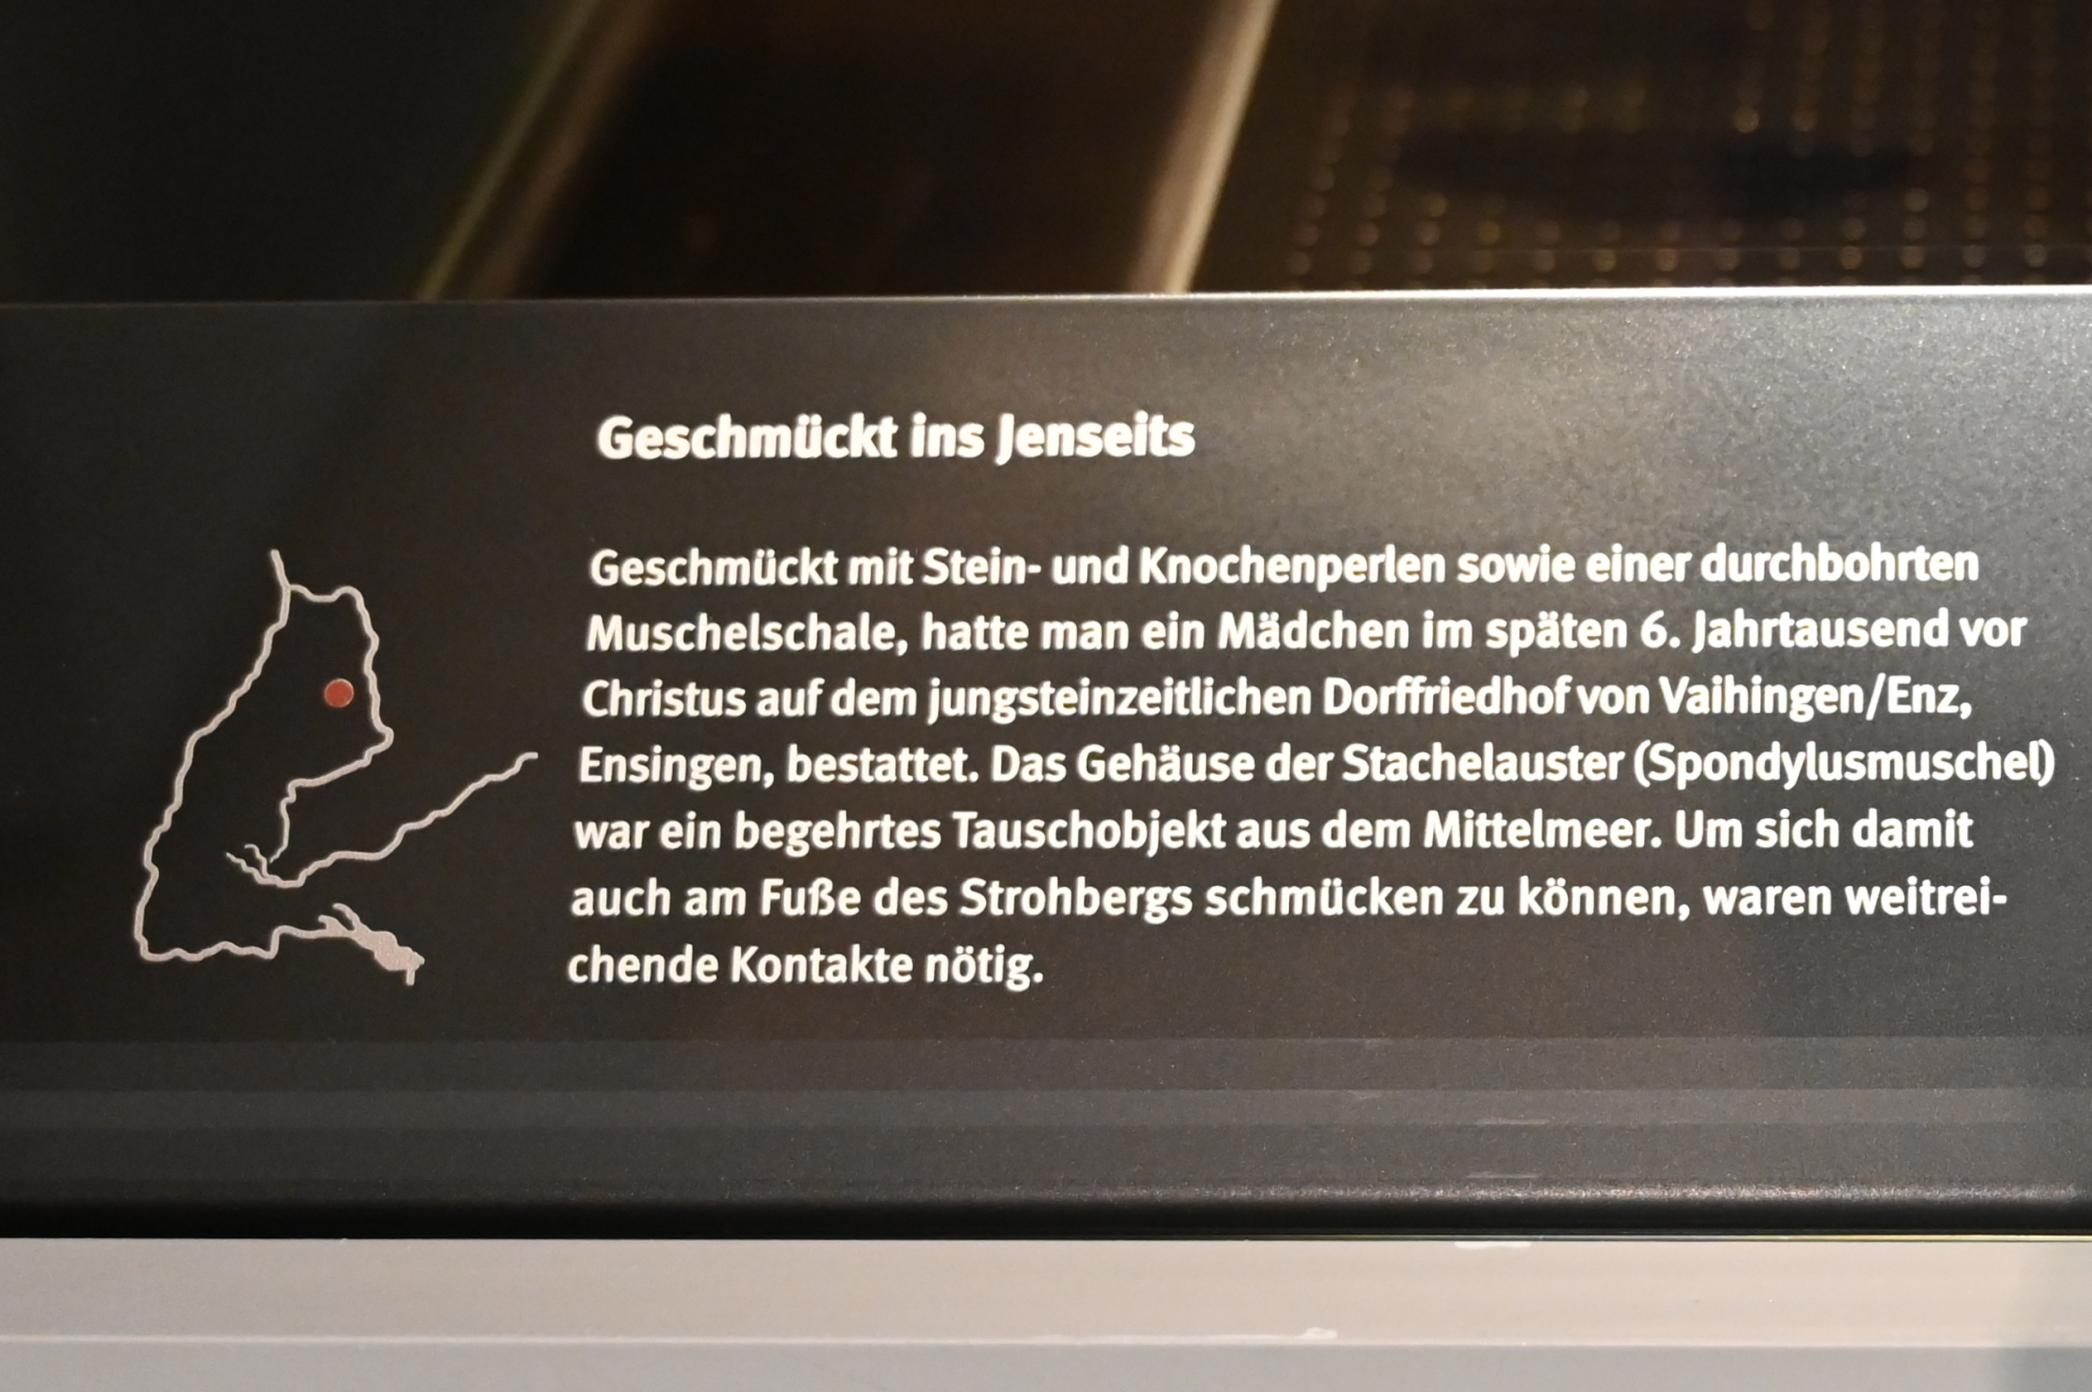 Spondylusmuschel, Neolithikum (Jungsteinzeit), 5500 - 1700 v. Chr., 5100 v. Chr., Bild 3/3